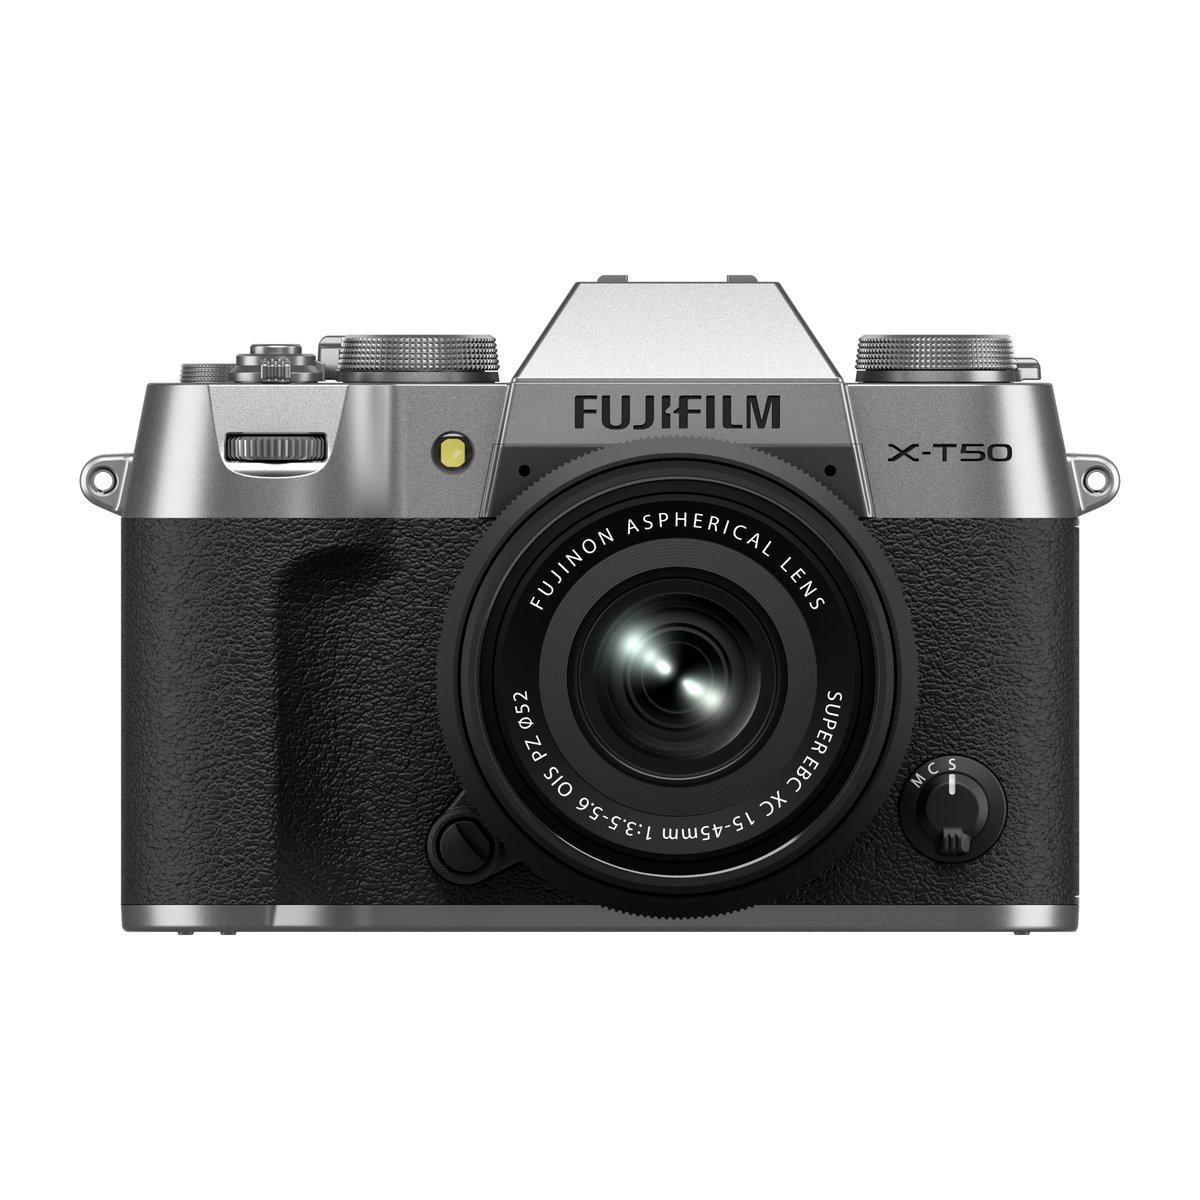 【新製品発表】
この度弊社は、独自の色再現技術による卓越した画質と小型軽量を実現する「Xシリーズ」の最新モデルとして、「FUJIFILM X-T50」を発売いたします。
fujifilm-x.com/ja-jp/products…

#xt50 #富士フイルム #FUJIFILM #Xシリーズ #fujifilm_xseries